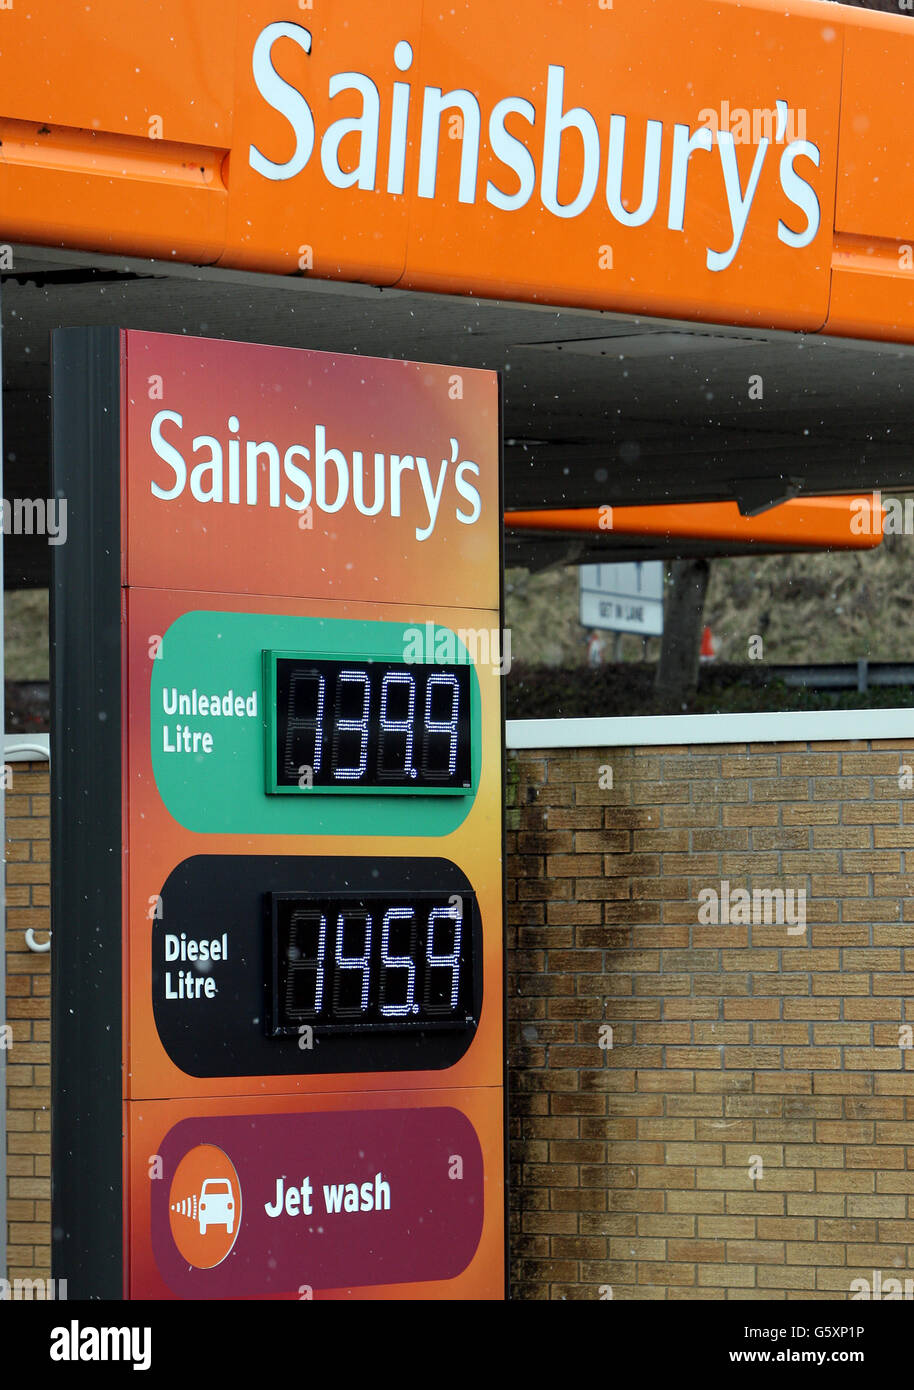 Une vue générale de la station-service de Sainsbury, montrant les prix du carburant et du diesel Banque D'Images